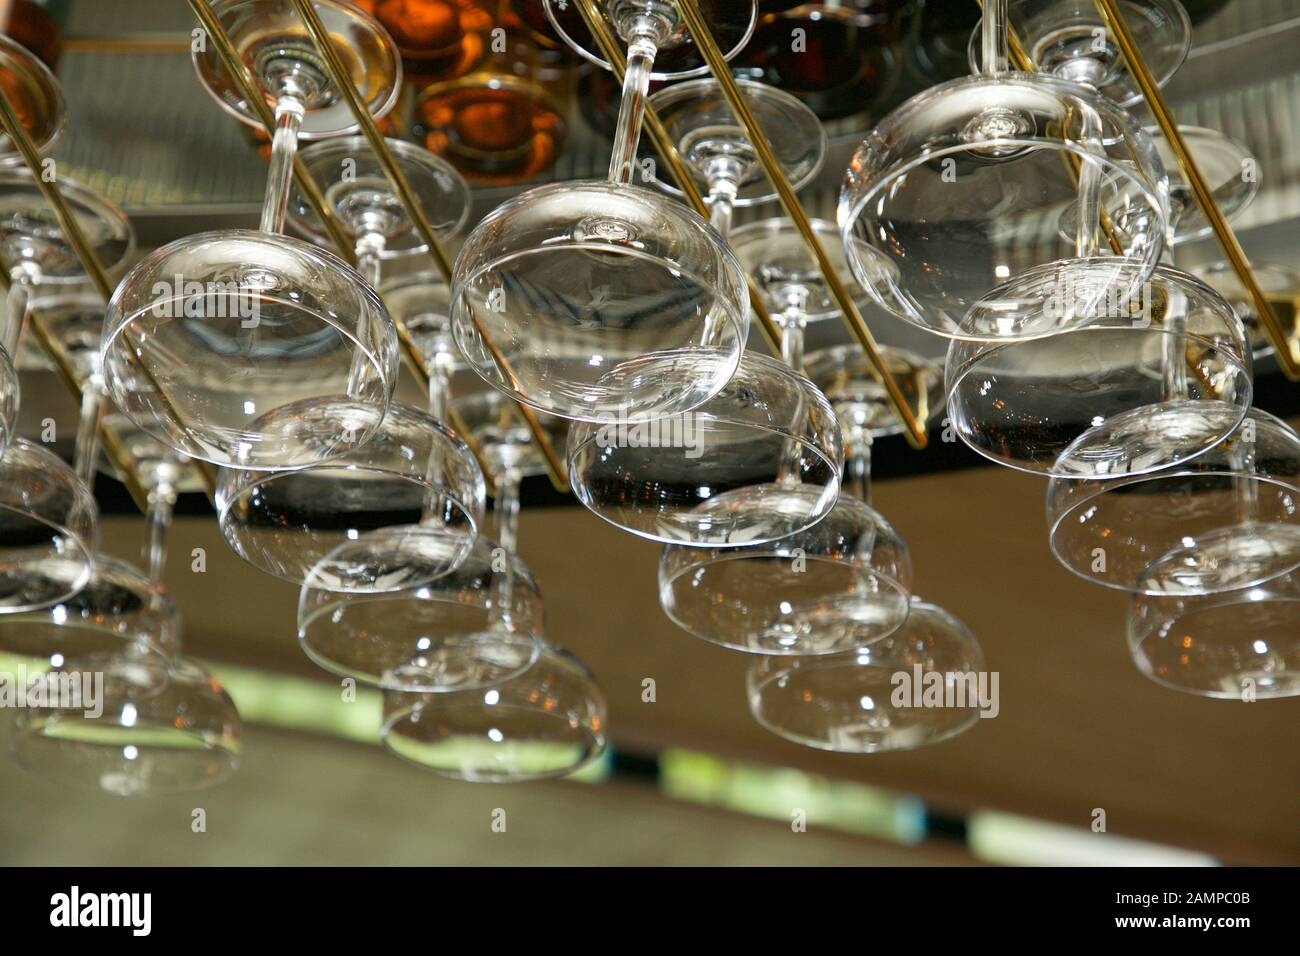 Les verres suspendus à un rack dans un bar ou restaurant. Banque D'Images